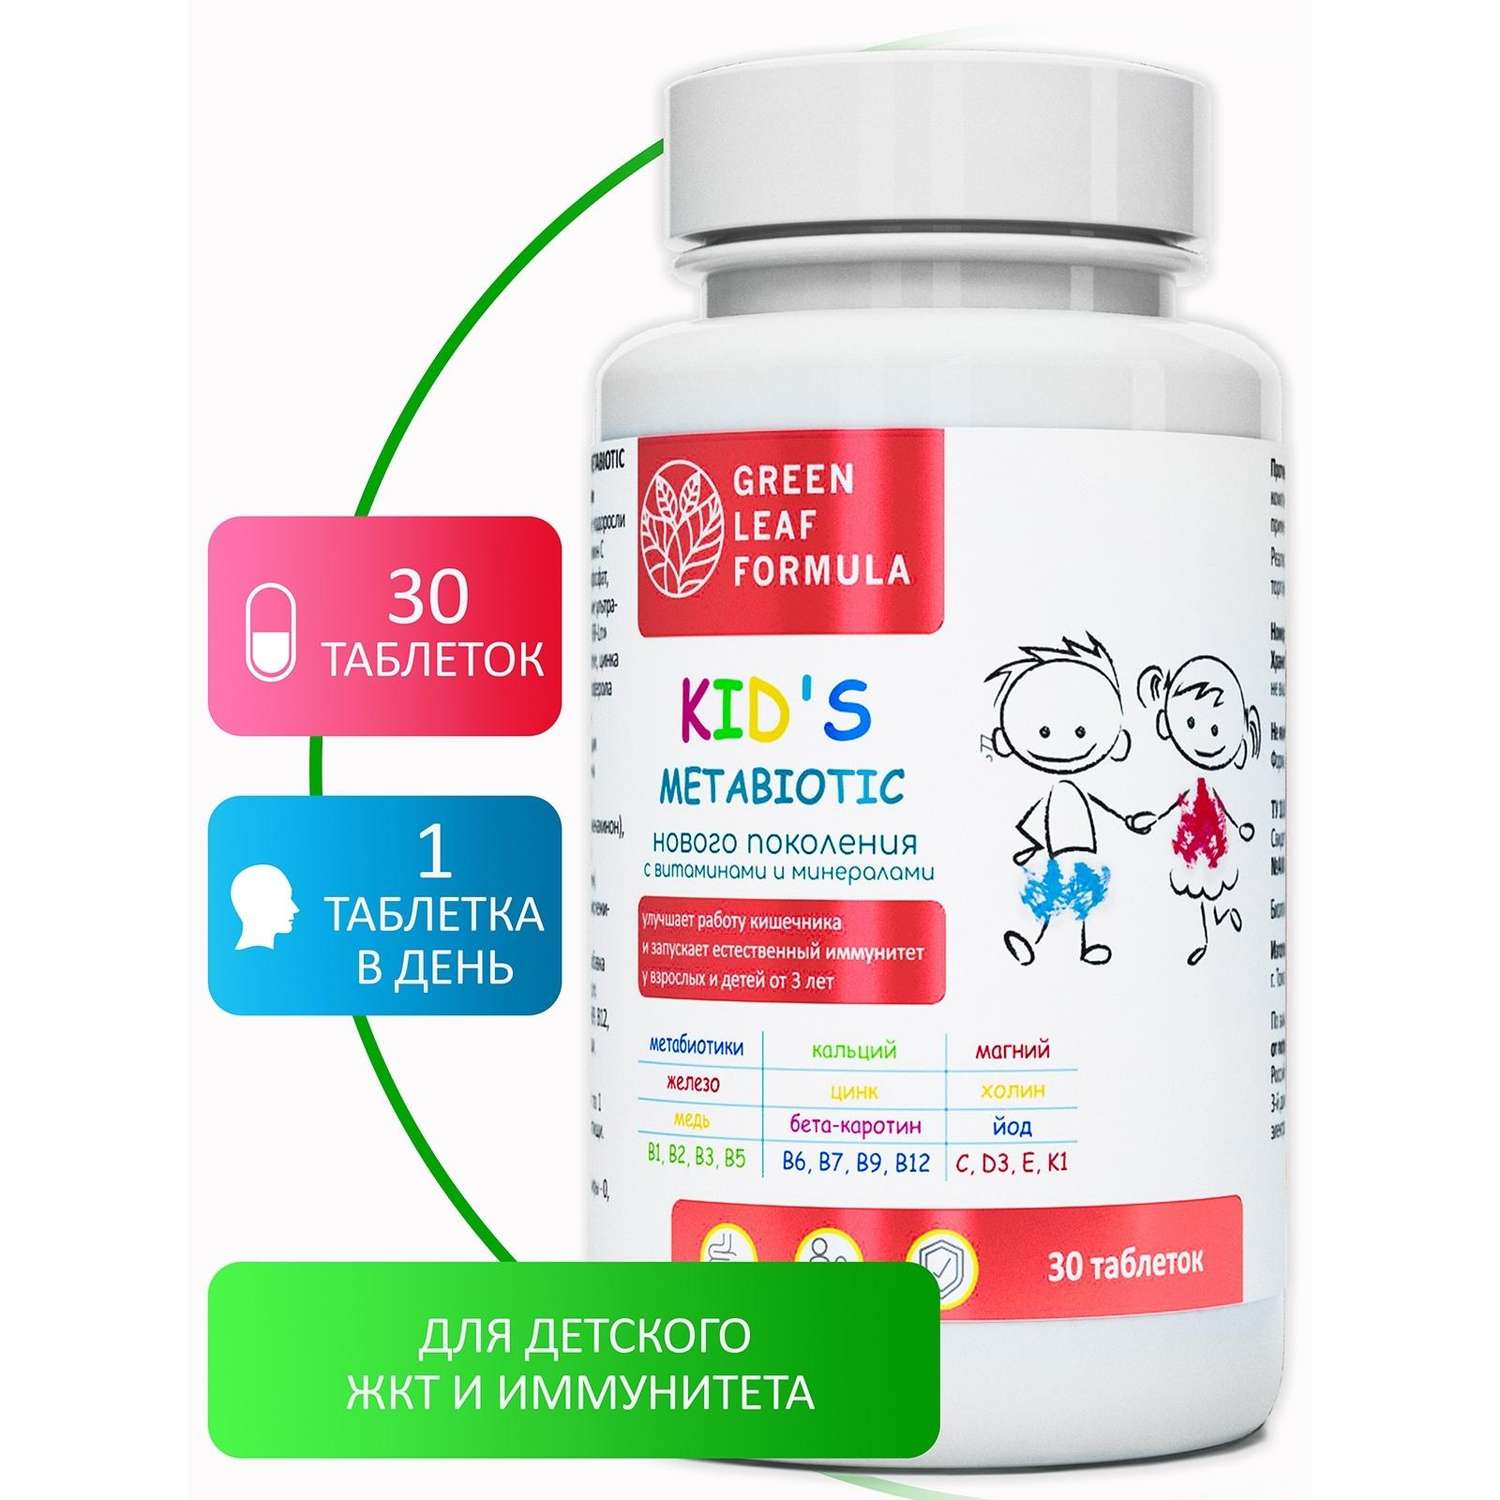 Метабиотик Green Leaf Formula для детей от 3 лет комплекс 30 таблеток - фото 1